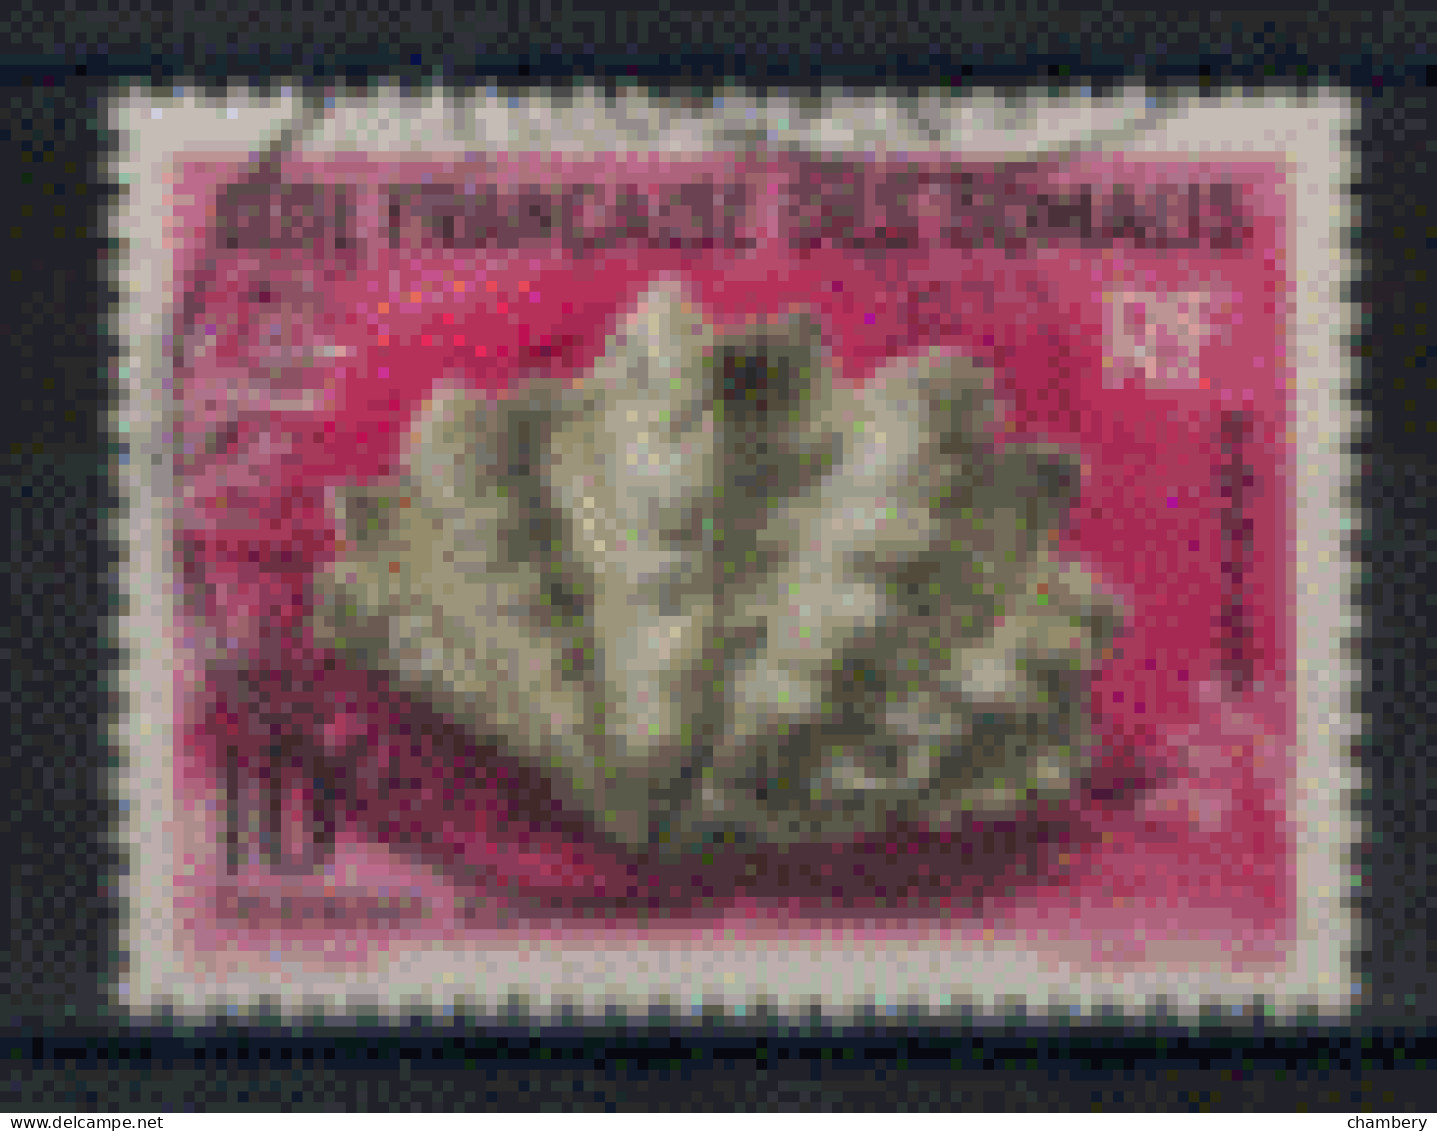 France - Somalies - "Coquillage De La Mer Rouge : Tridacna" - Oblitéré N° 312 De 1962 - Oblitérés